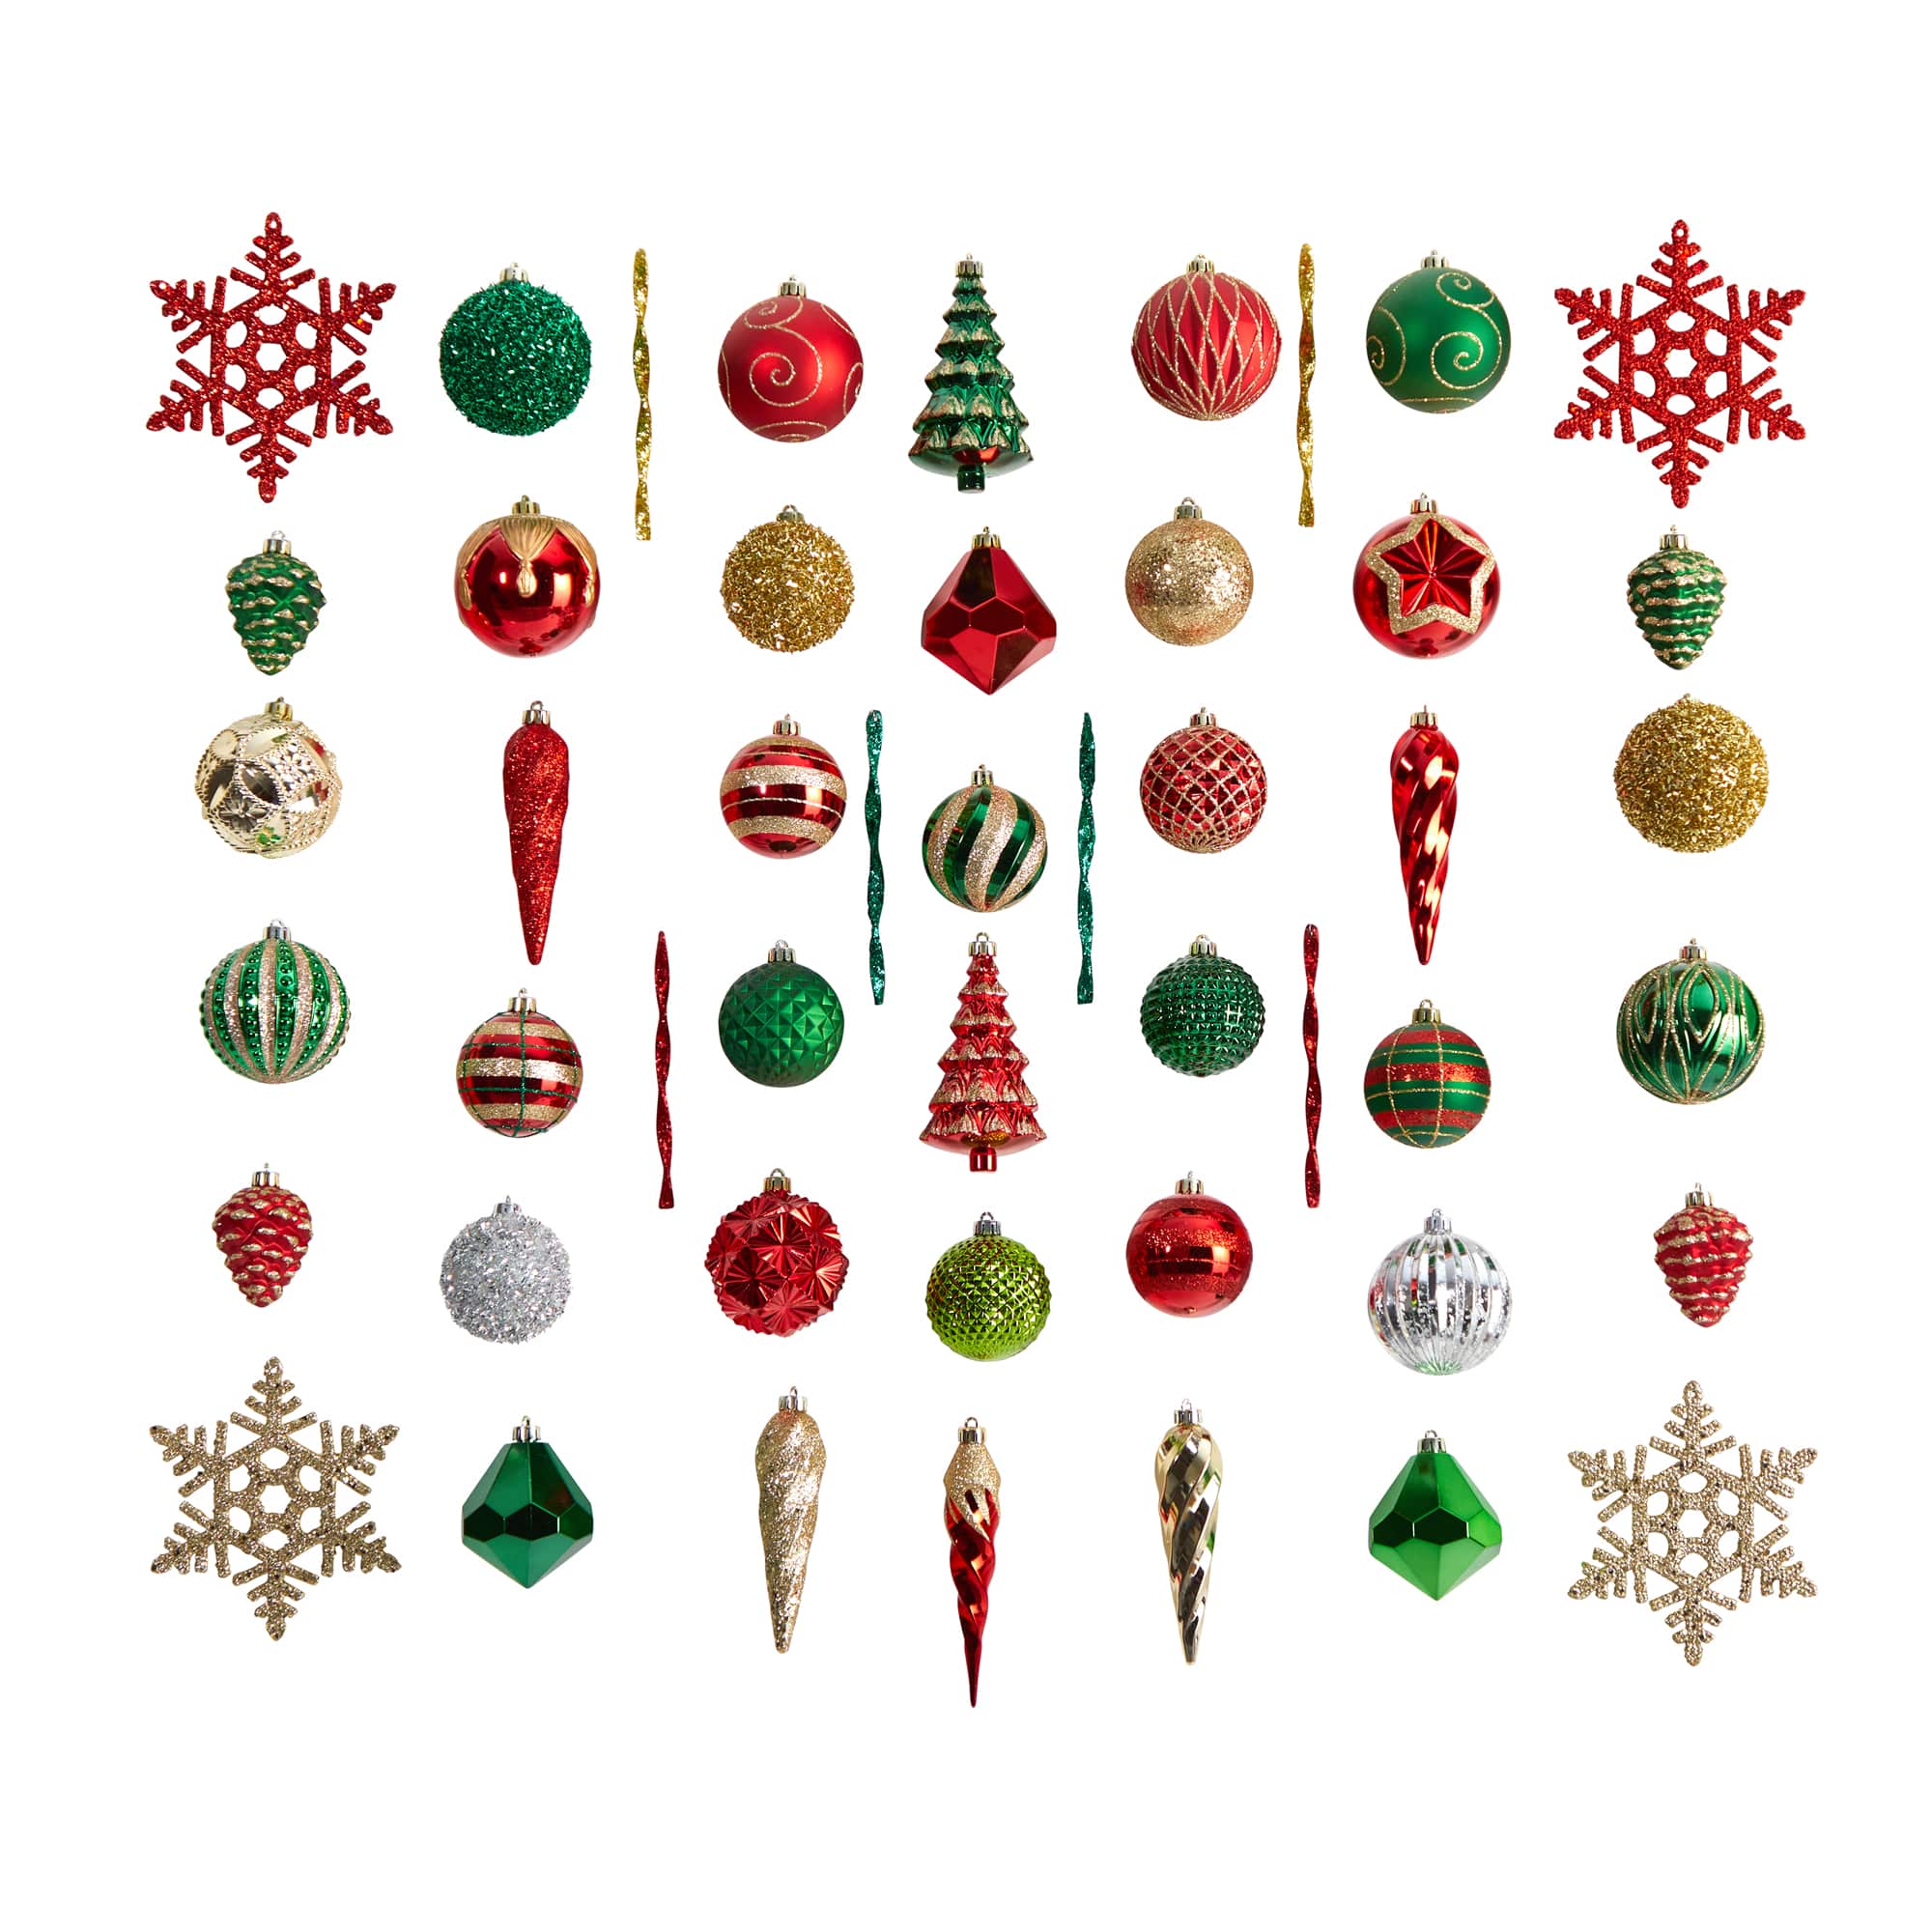 24ct. 4 White Glitter Snowflake Christmas Ornaments